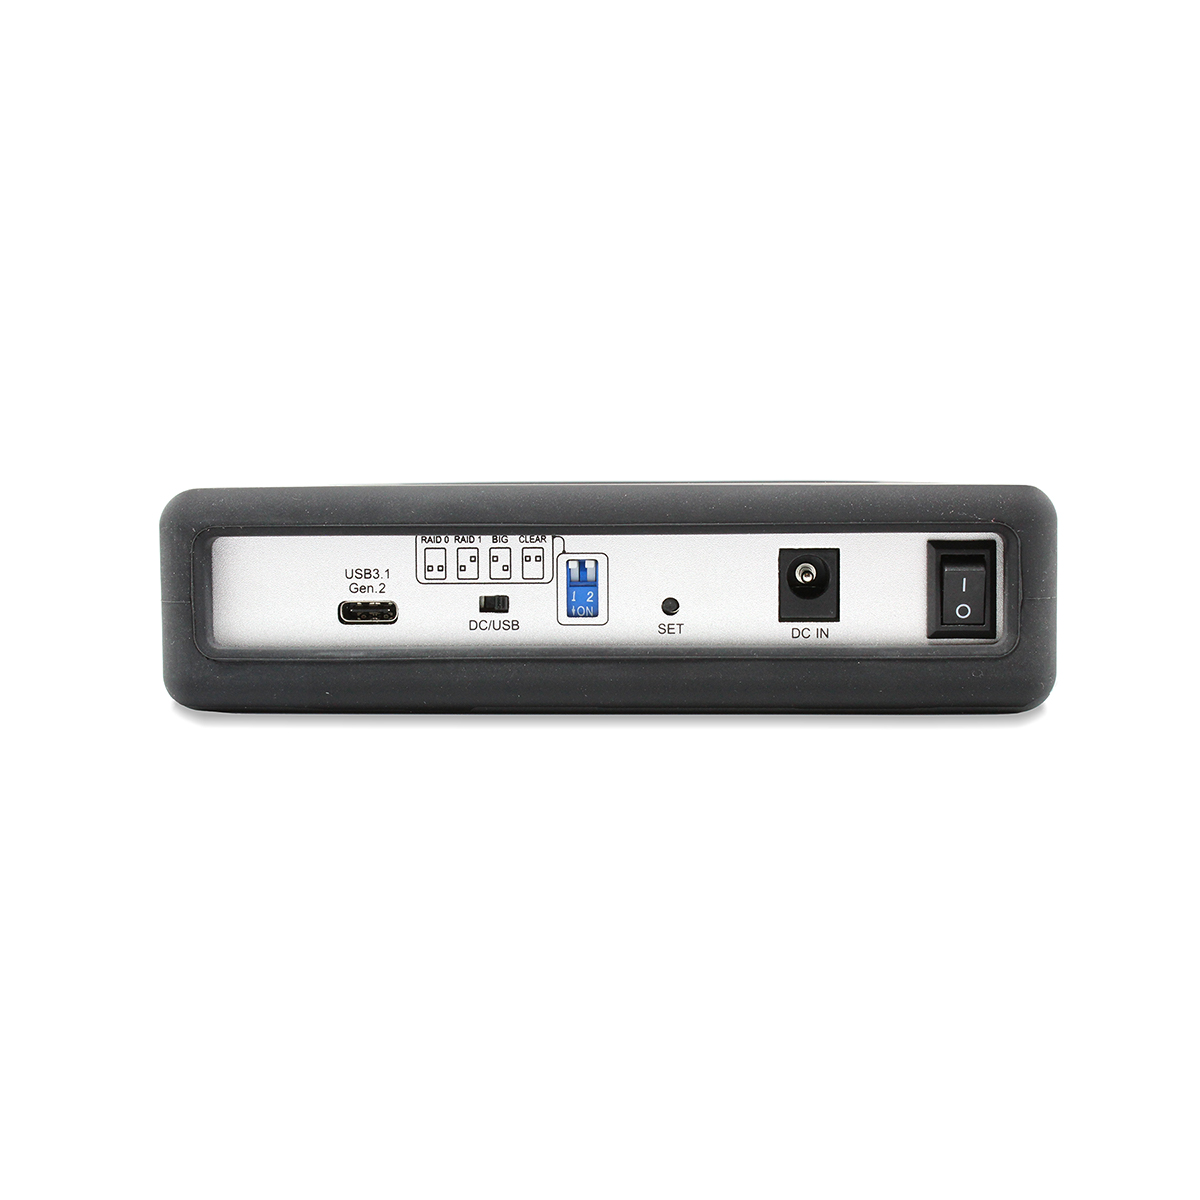 10TB MiniPro Dura RAID USB-C Hard Drive